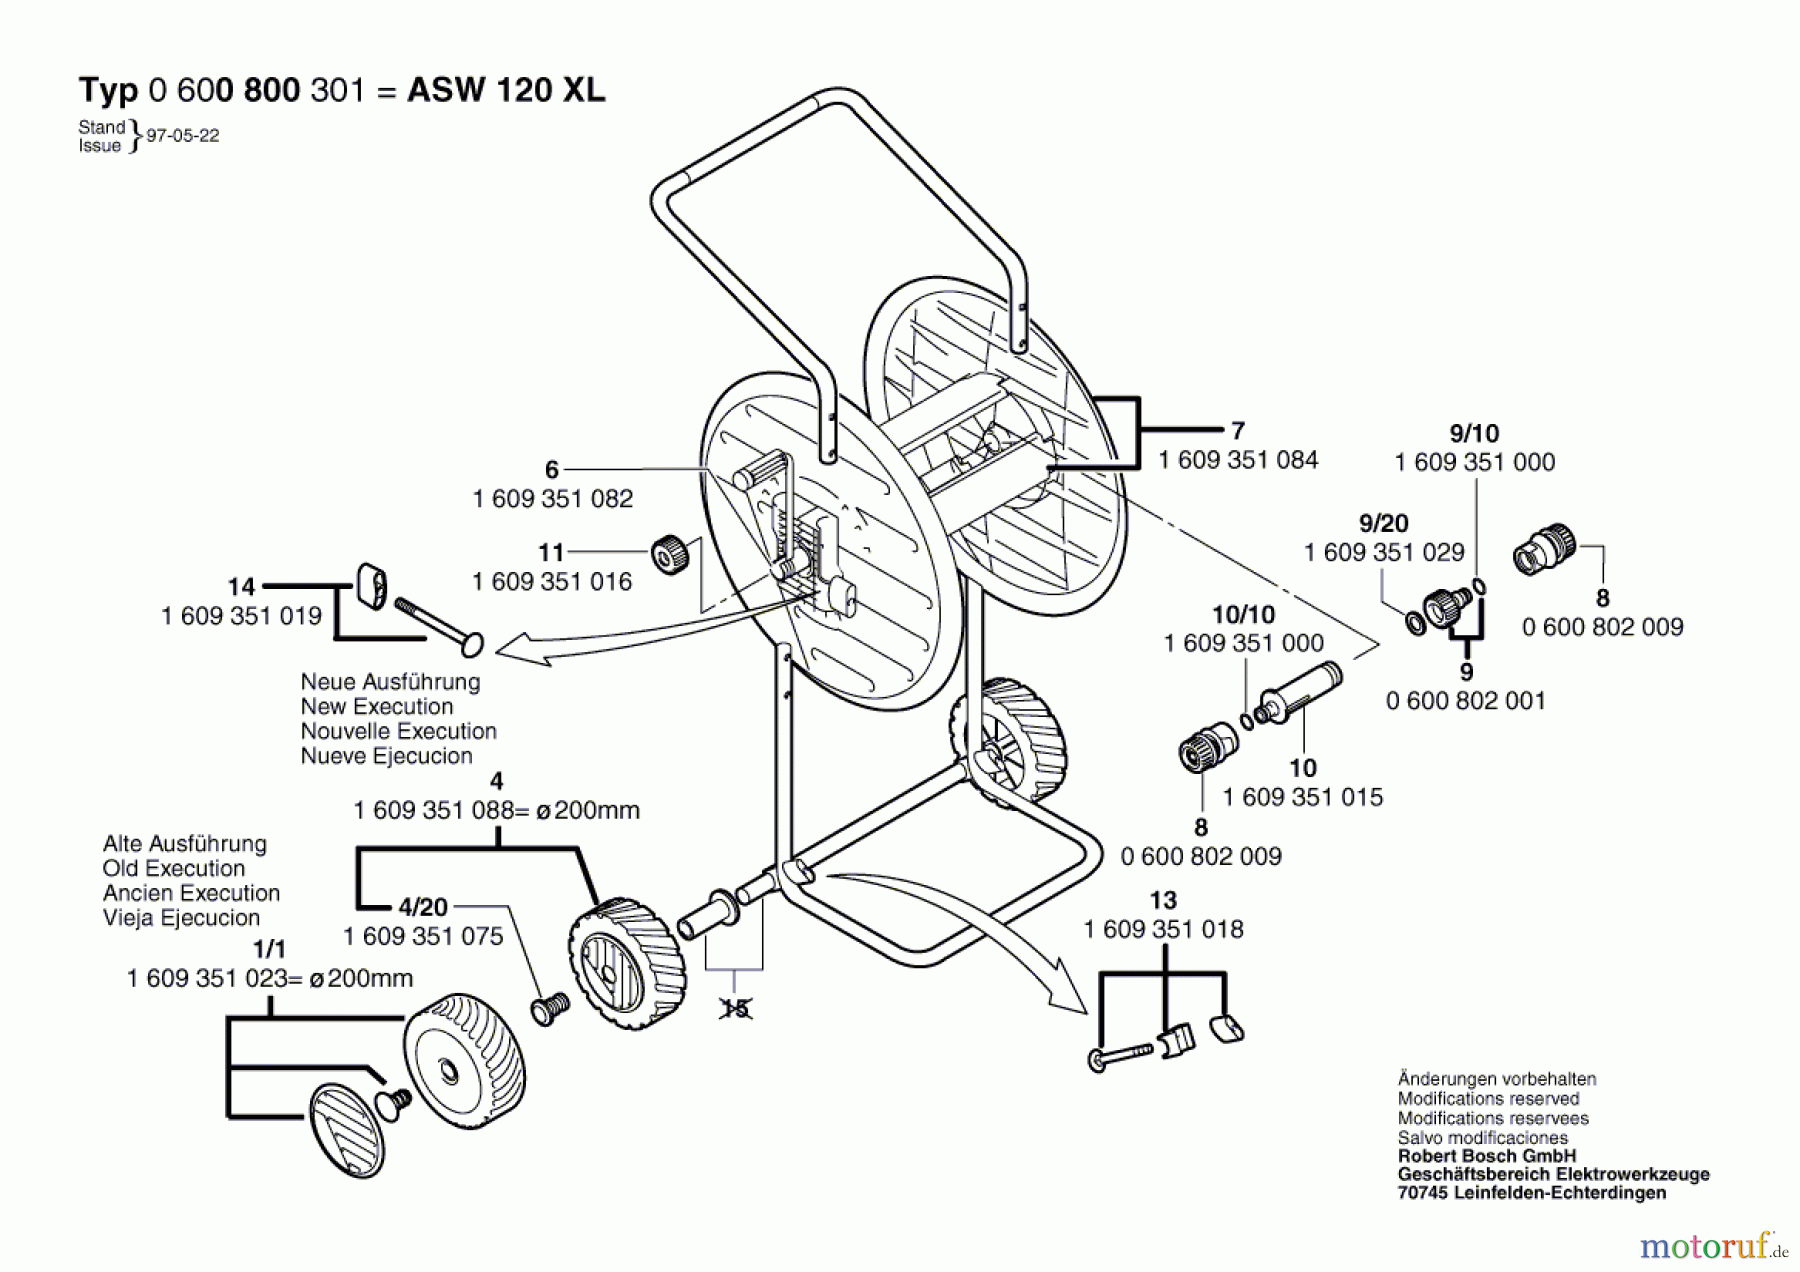  Bosch Wassertechnik Schlauchwagen ASW 120 XL Seite 1